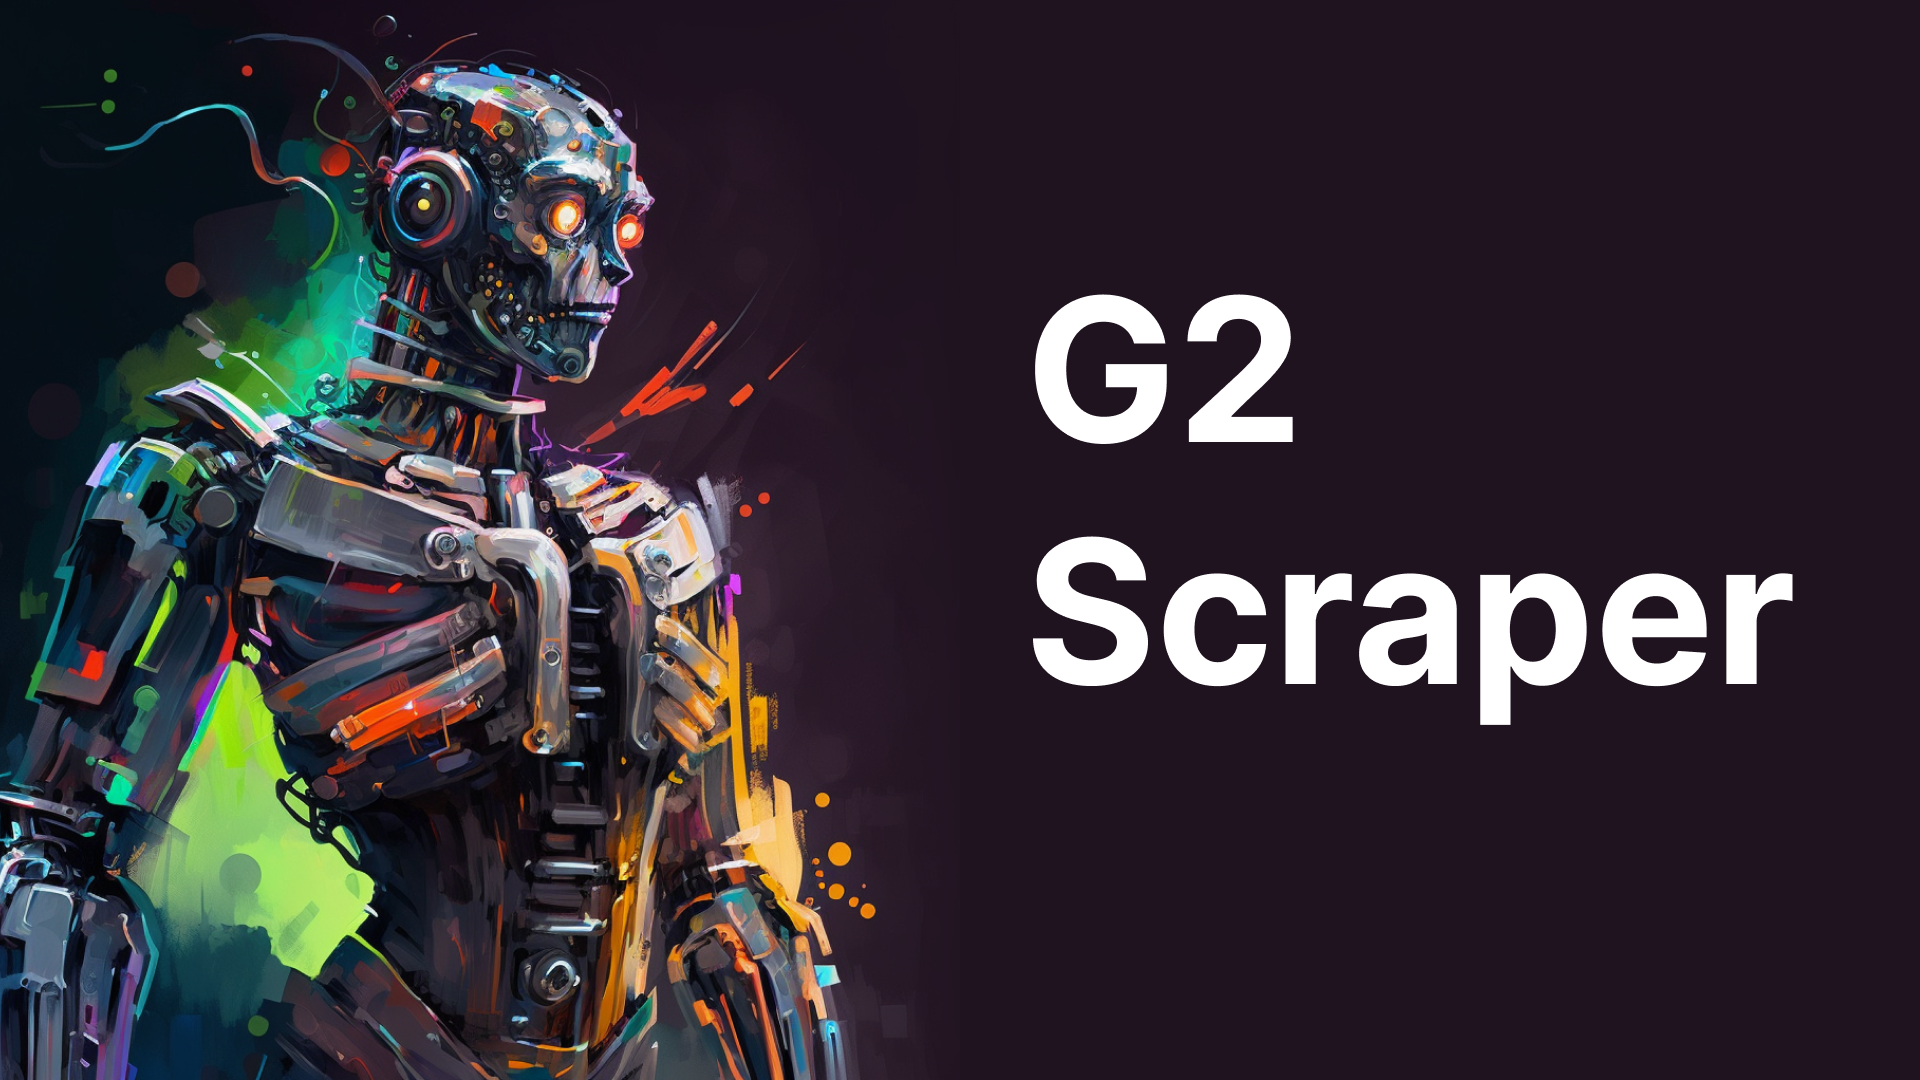 G2 Scraper Featured Image